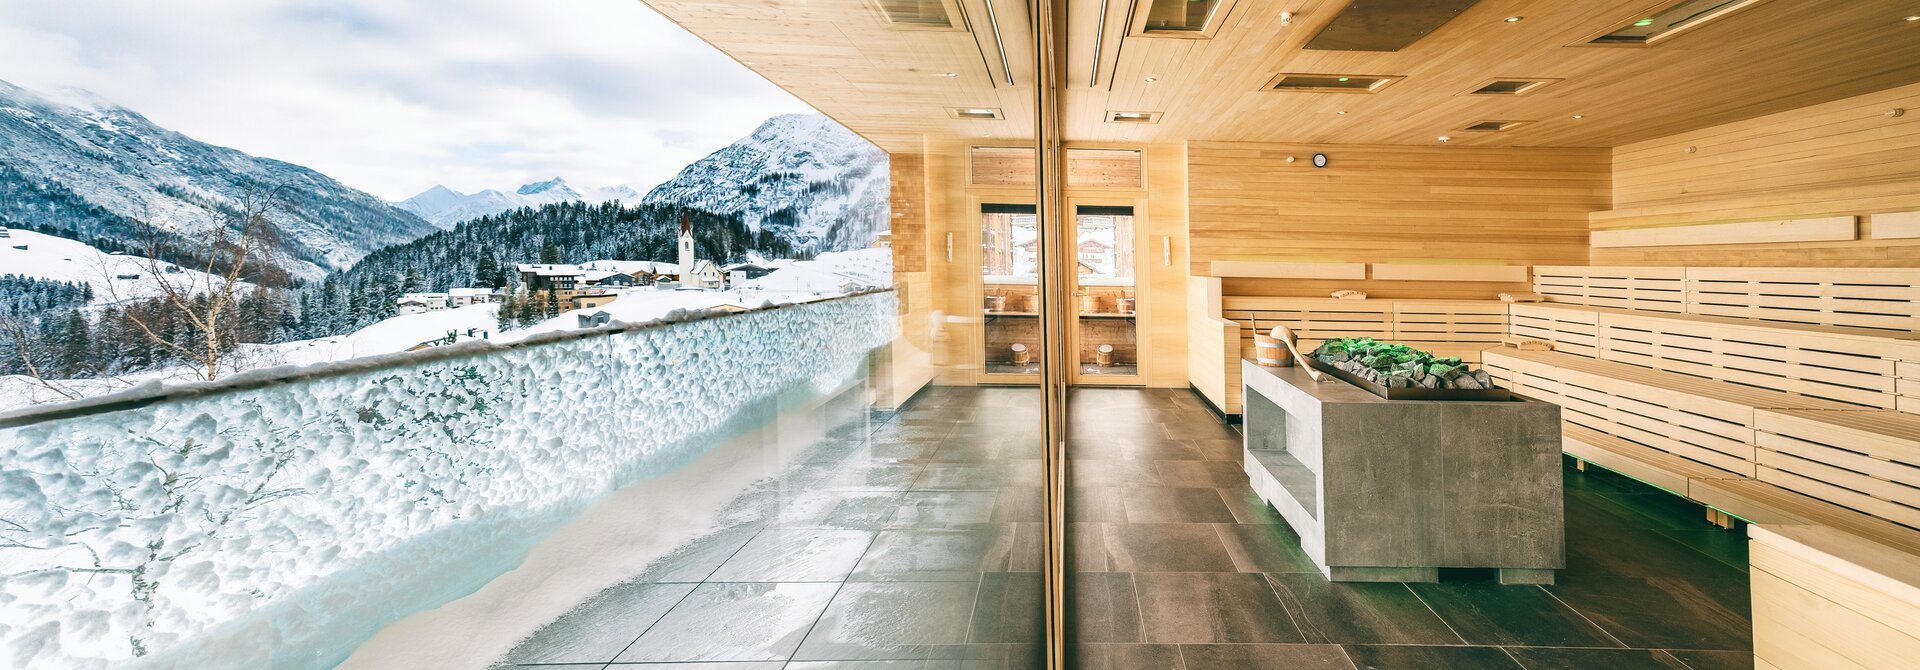 Panorama Sauna aus Holz | Wellnesshotel Warther Hof, Vorarlberg